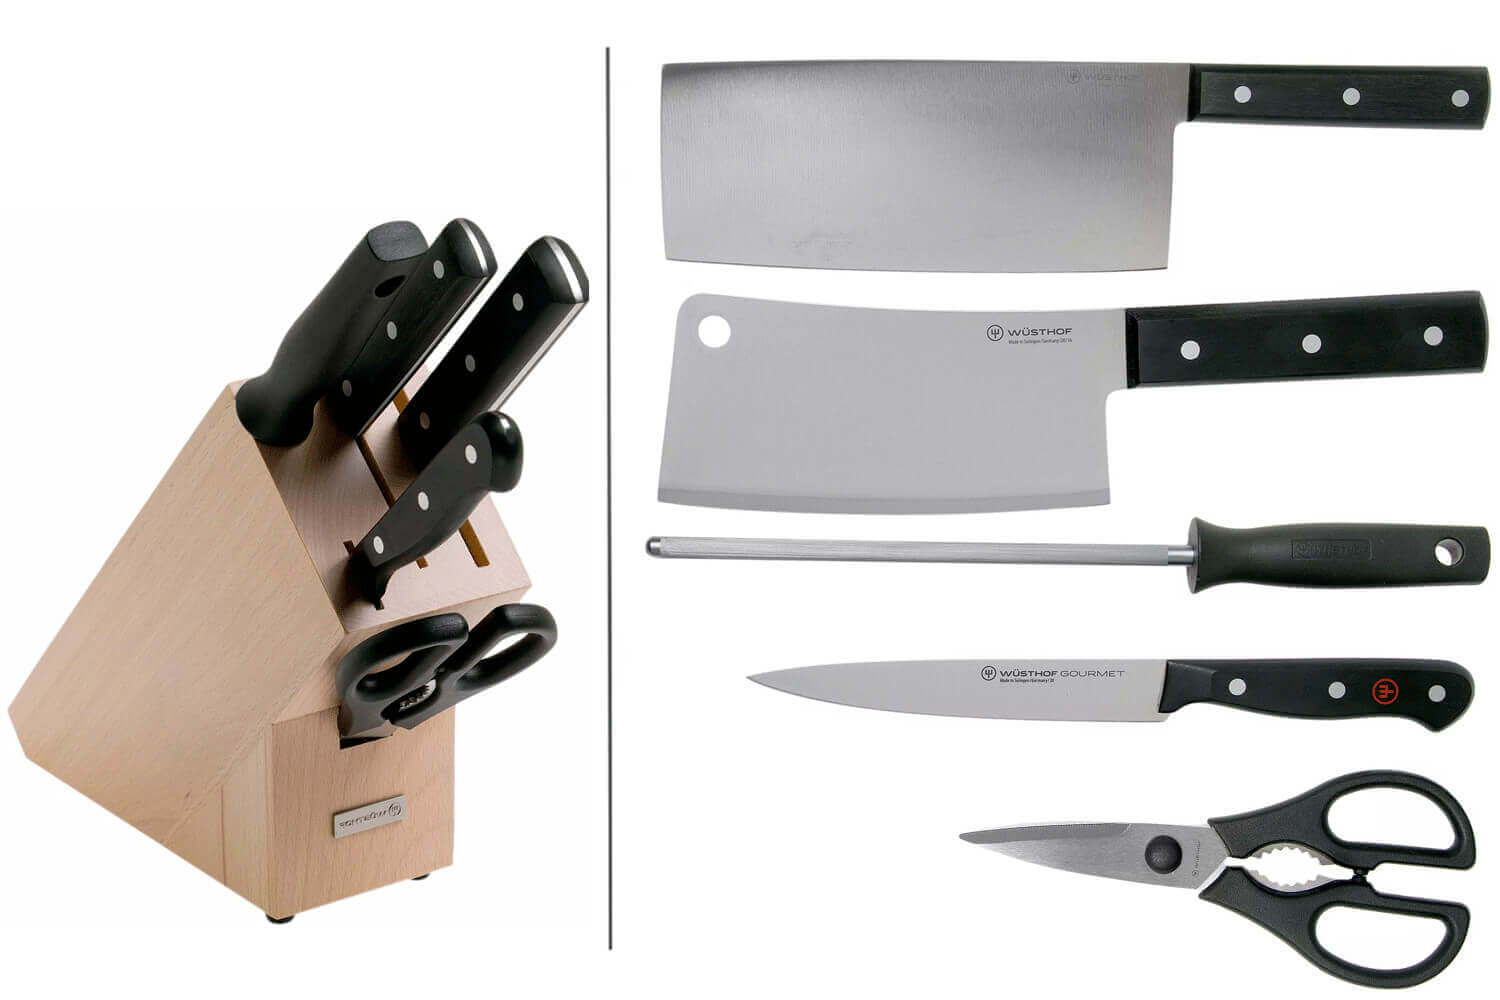 affutage de couteaux , ciseaux , outils de jardin ou d'atelier à